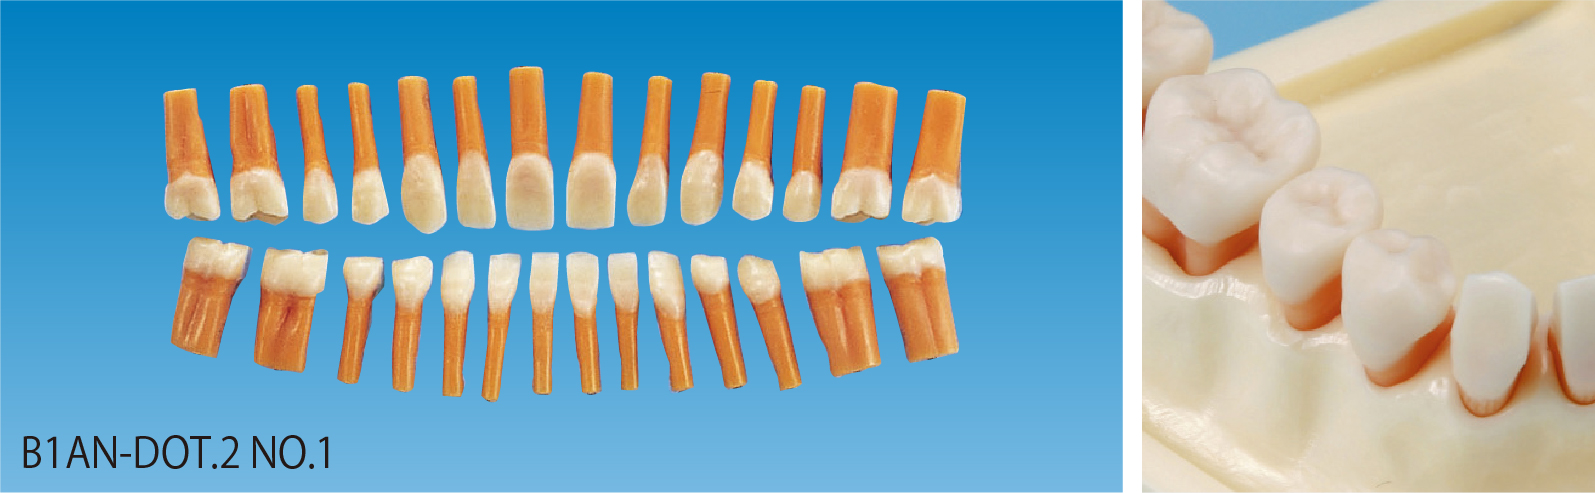 隣接面カット模型歯 [B1AN-DOT.2 NO.1]